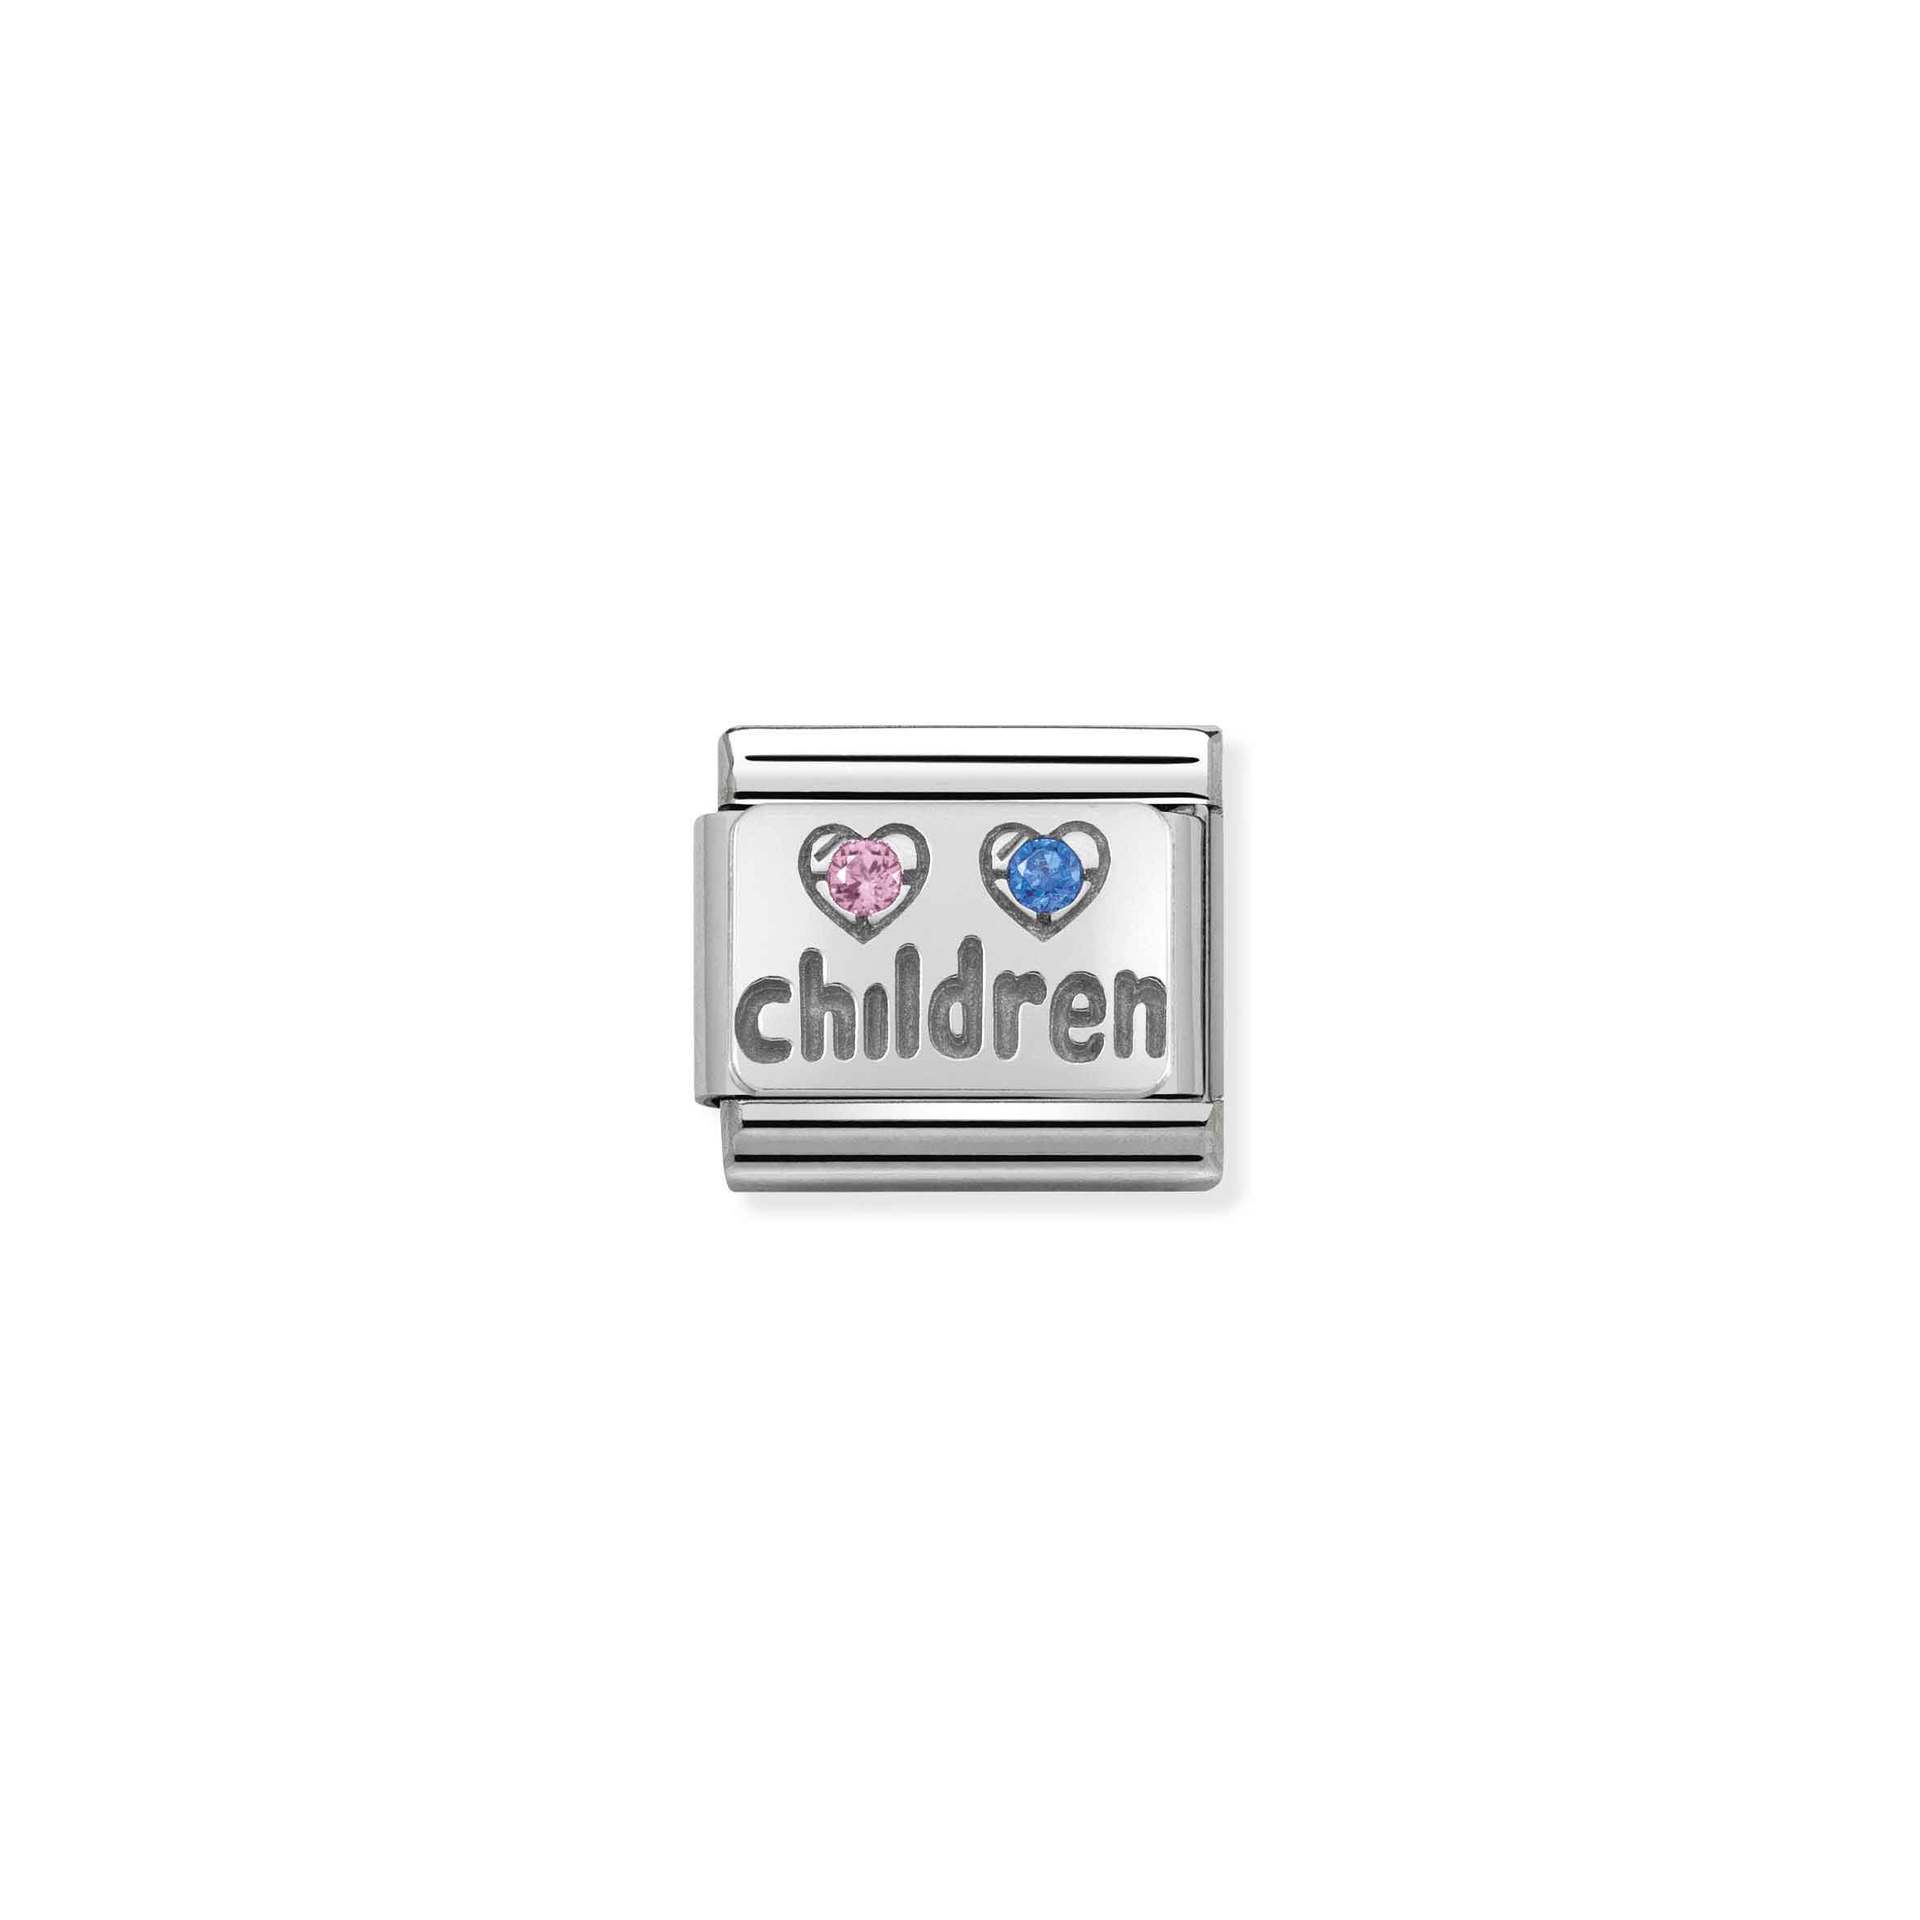 Nomination Composable Classic children charm - 330304_15